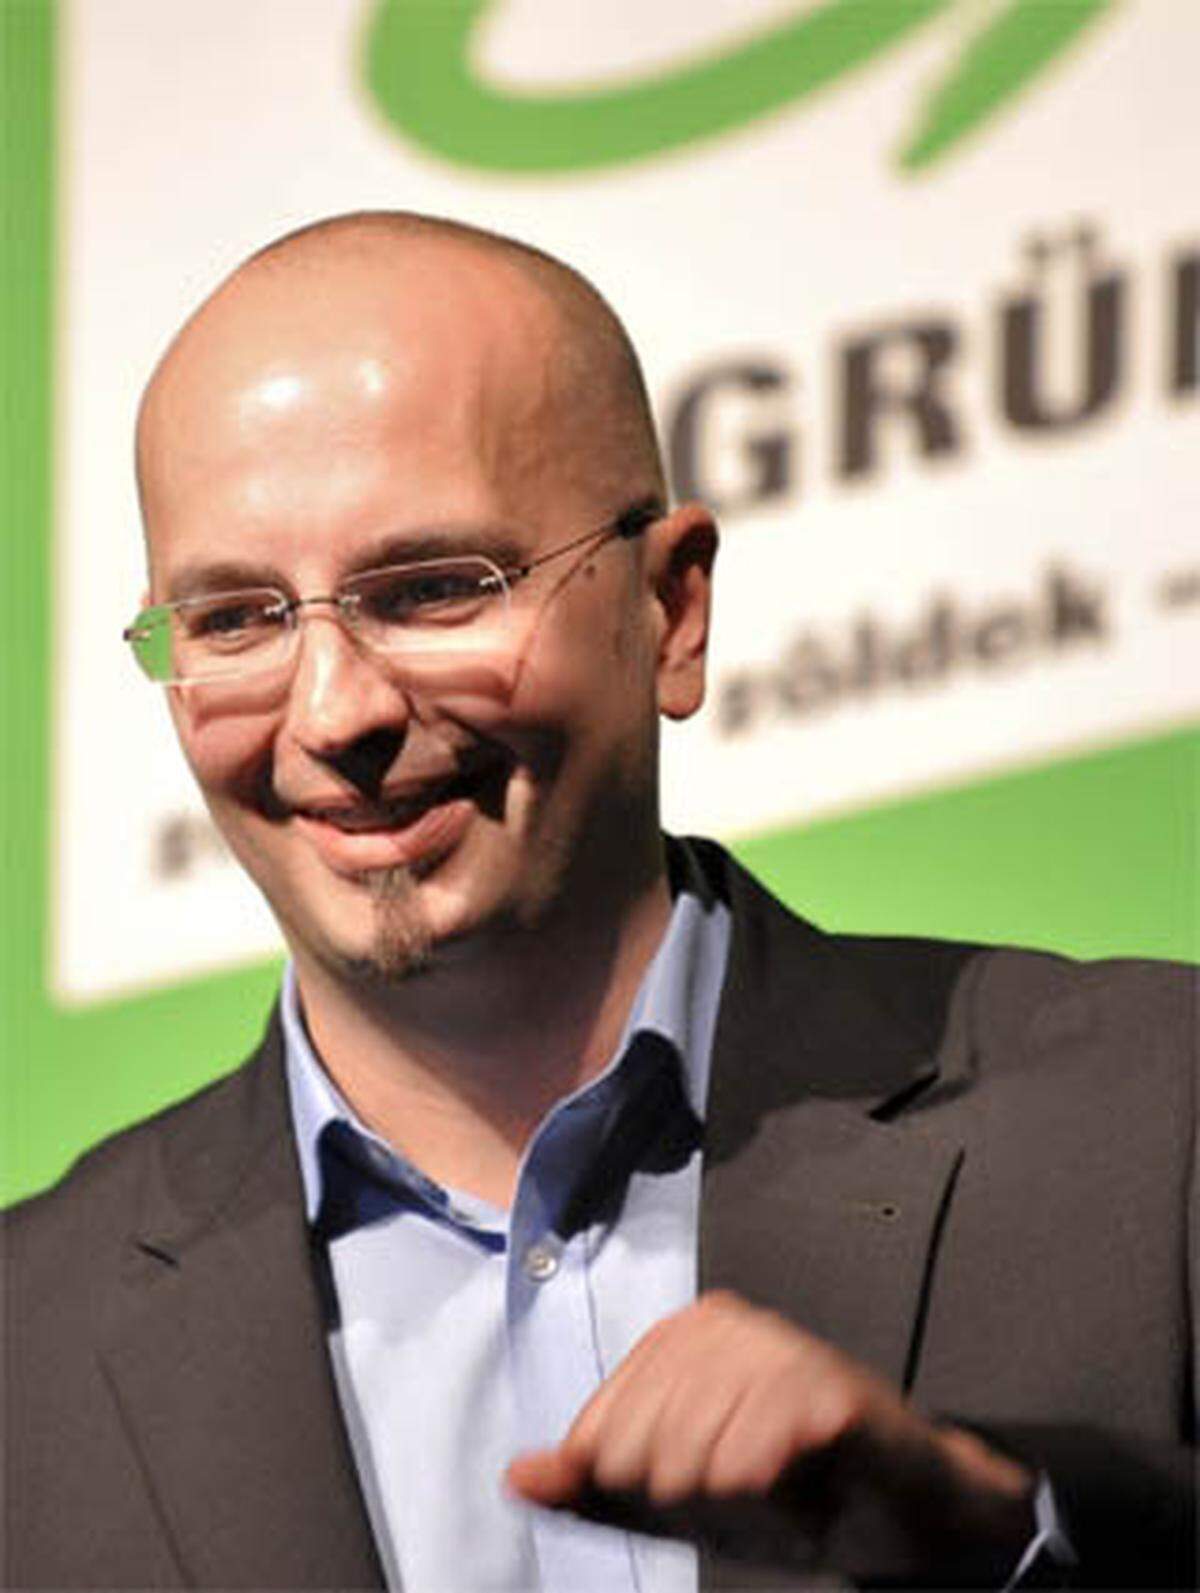 Reimon ist Autor von Büchern über Politik und Wirtschaft und war Pressesprecher bei den Grünen im Burgenland, die ihn im Jänner als Spitzenkandidaten für die Landtagswahl präsentierten.